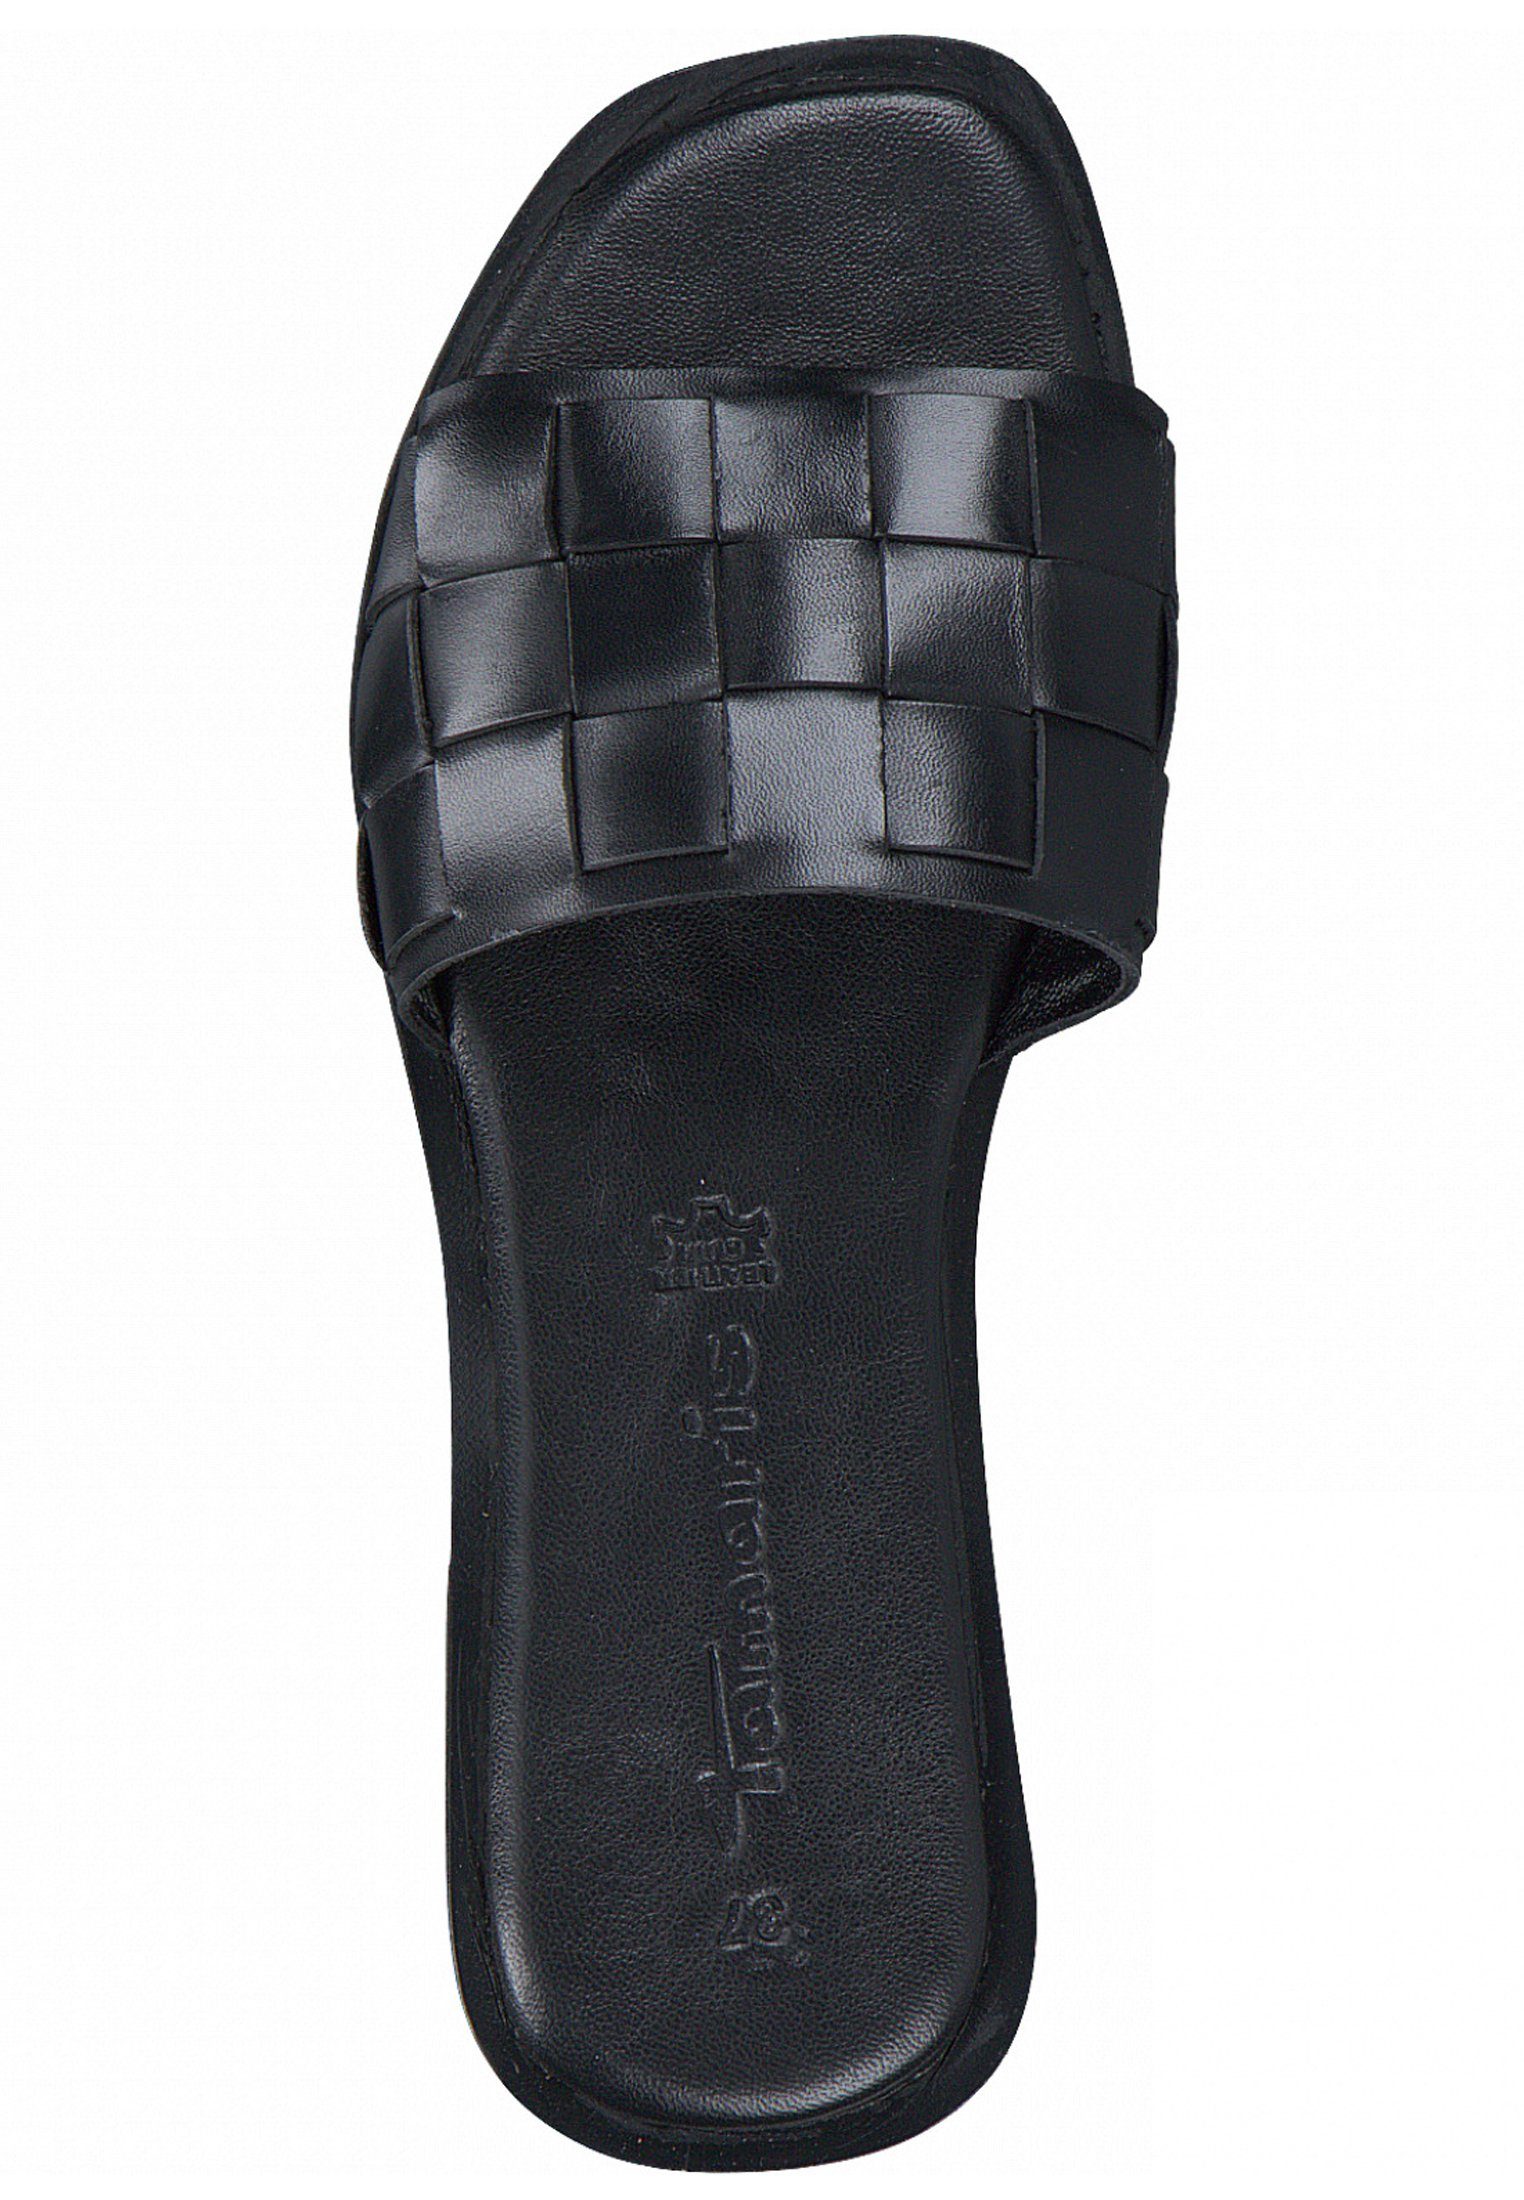 Sandale Leather 003 Black Tamaris 1-27122-28